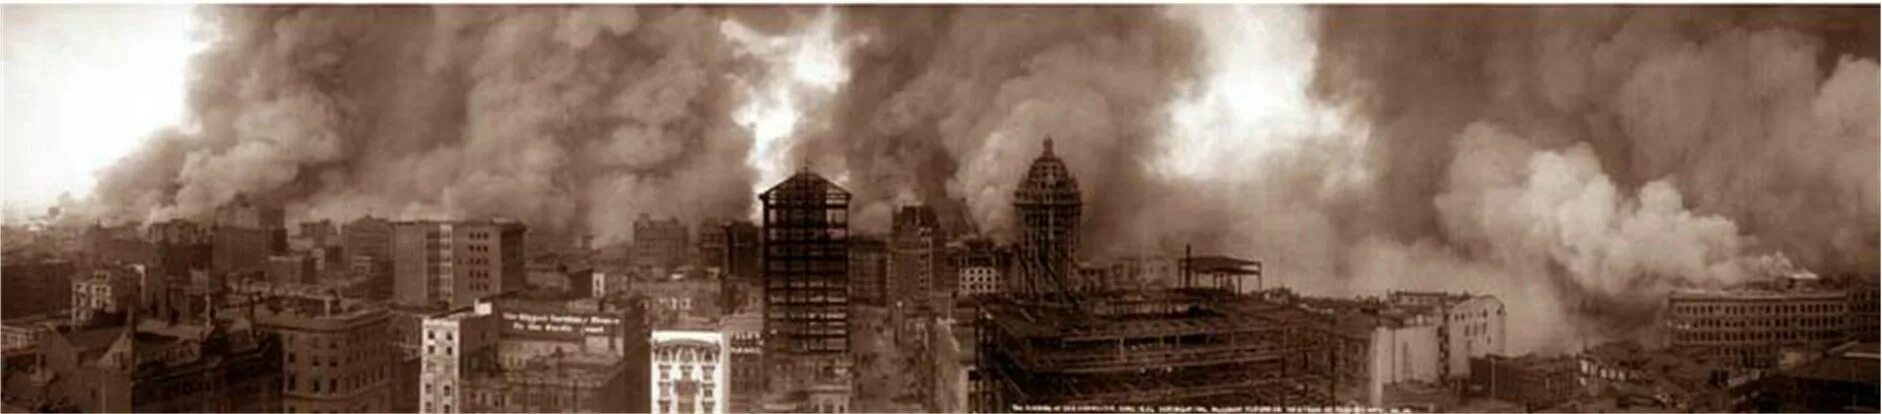 Землетрясение в сан франциско. Пожар в Сан Франциско 1906. Землетрясение и пожар в Сан-Франциско в 1906 году. Землетрясение в Сан Франциско 1906. Сан Франциско 1906 год.